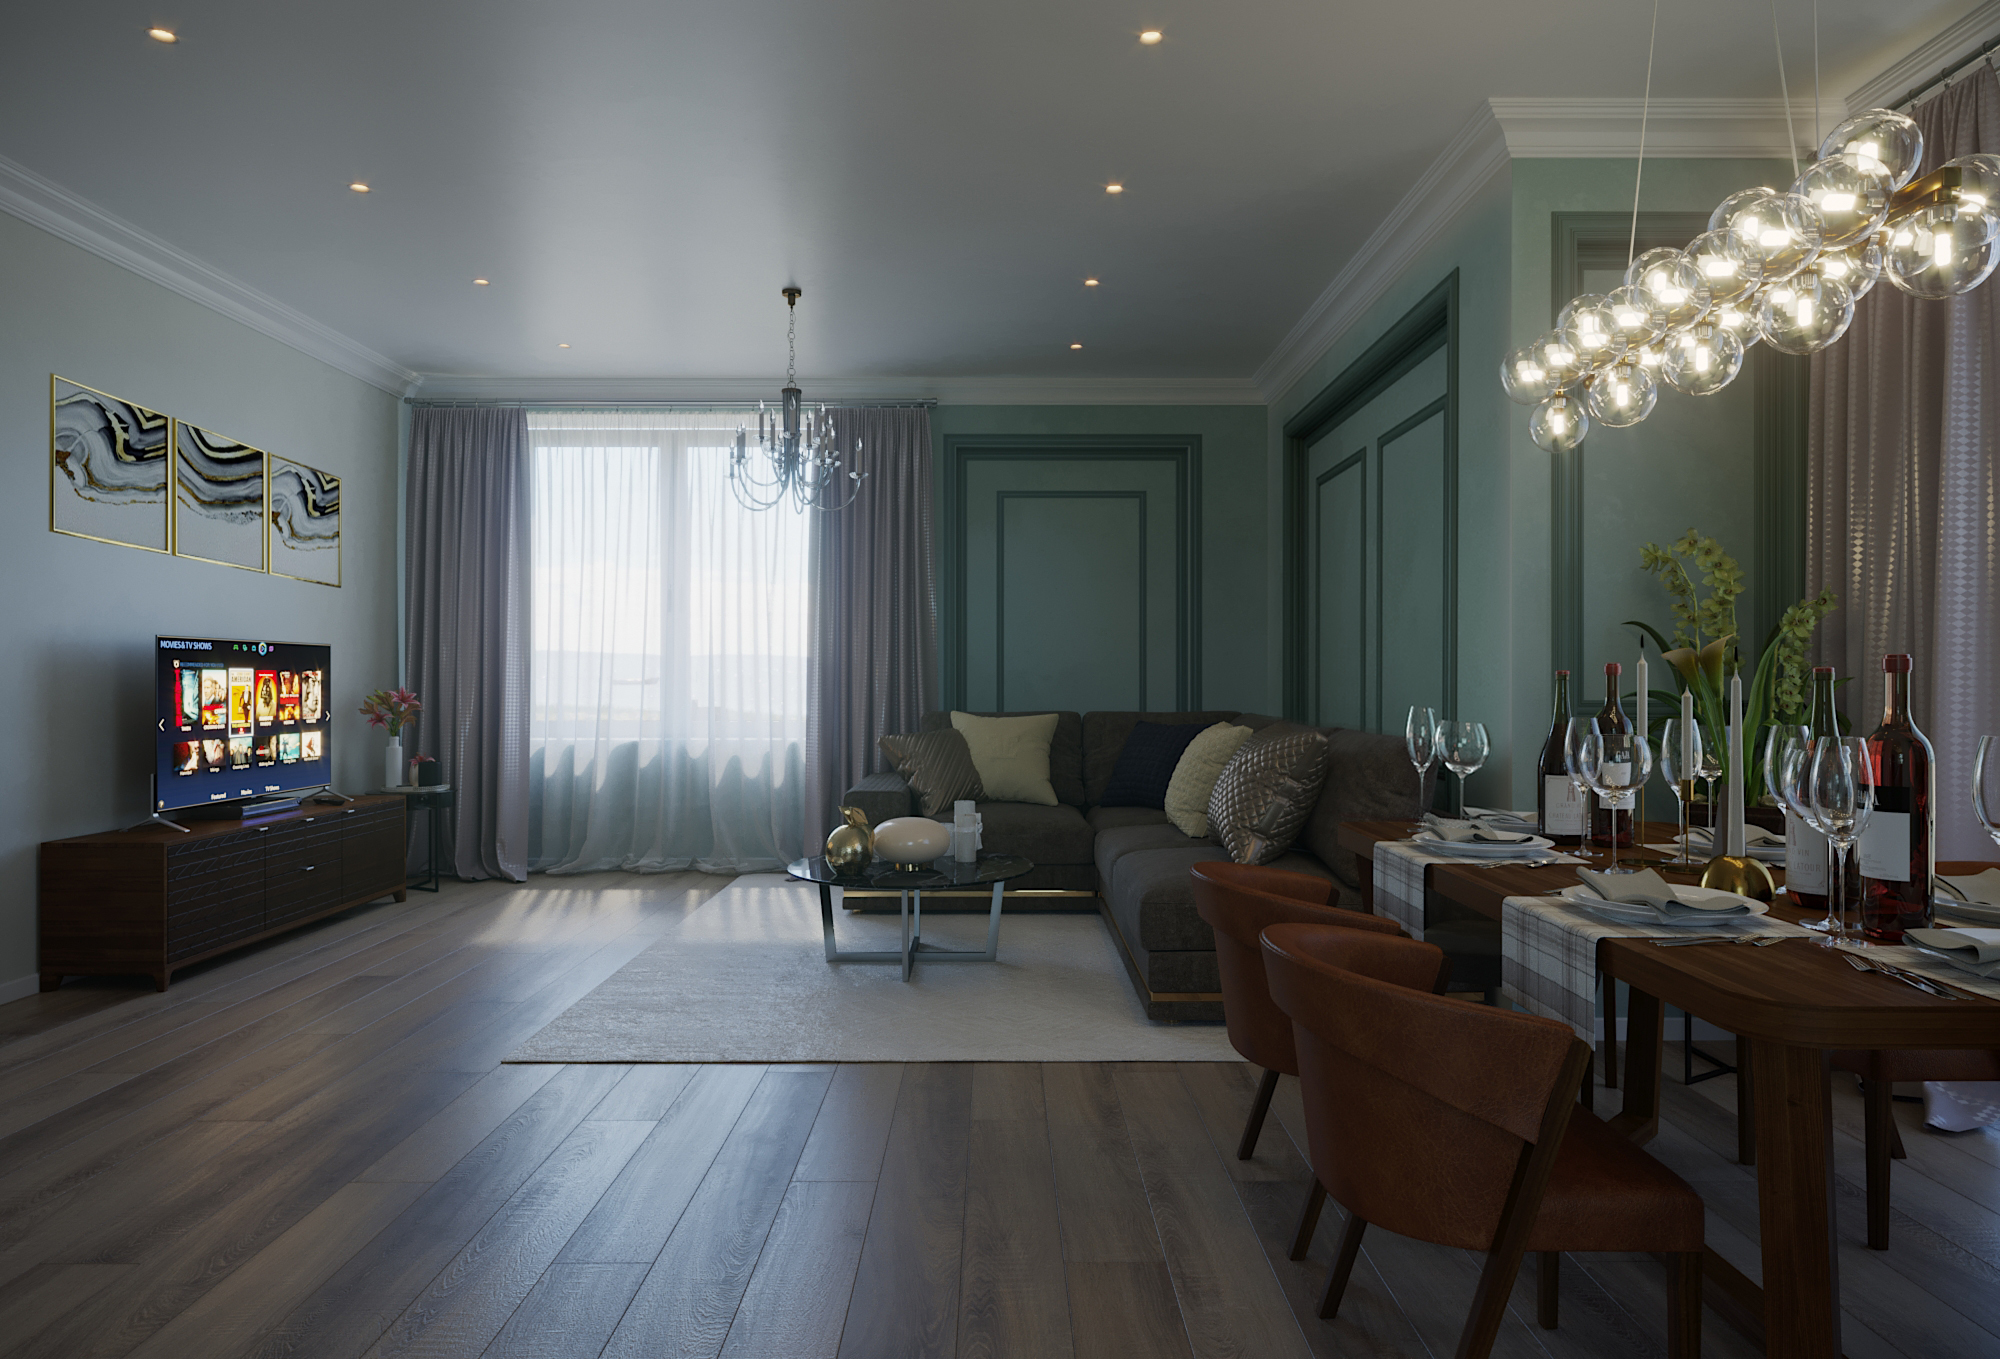 Visualizzazione 3D soggiorno con cucina in 3d max corona render immagine